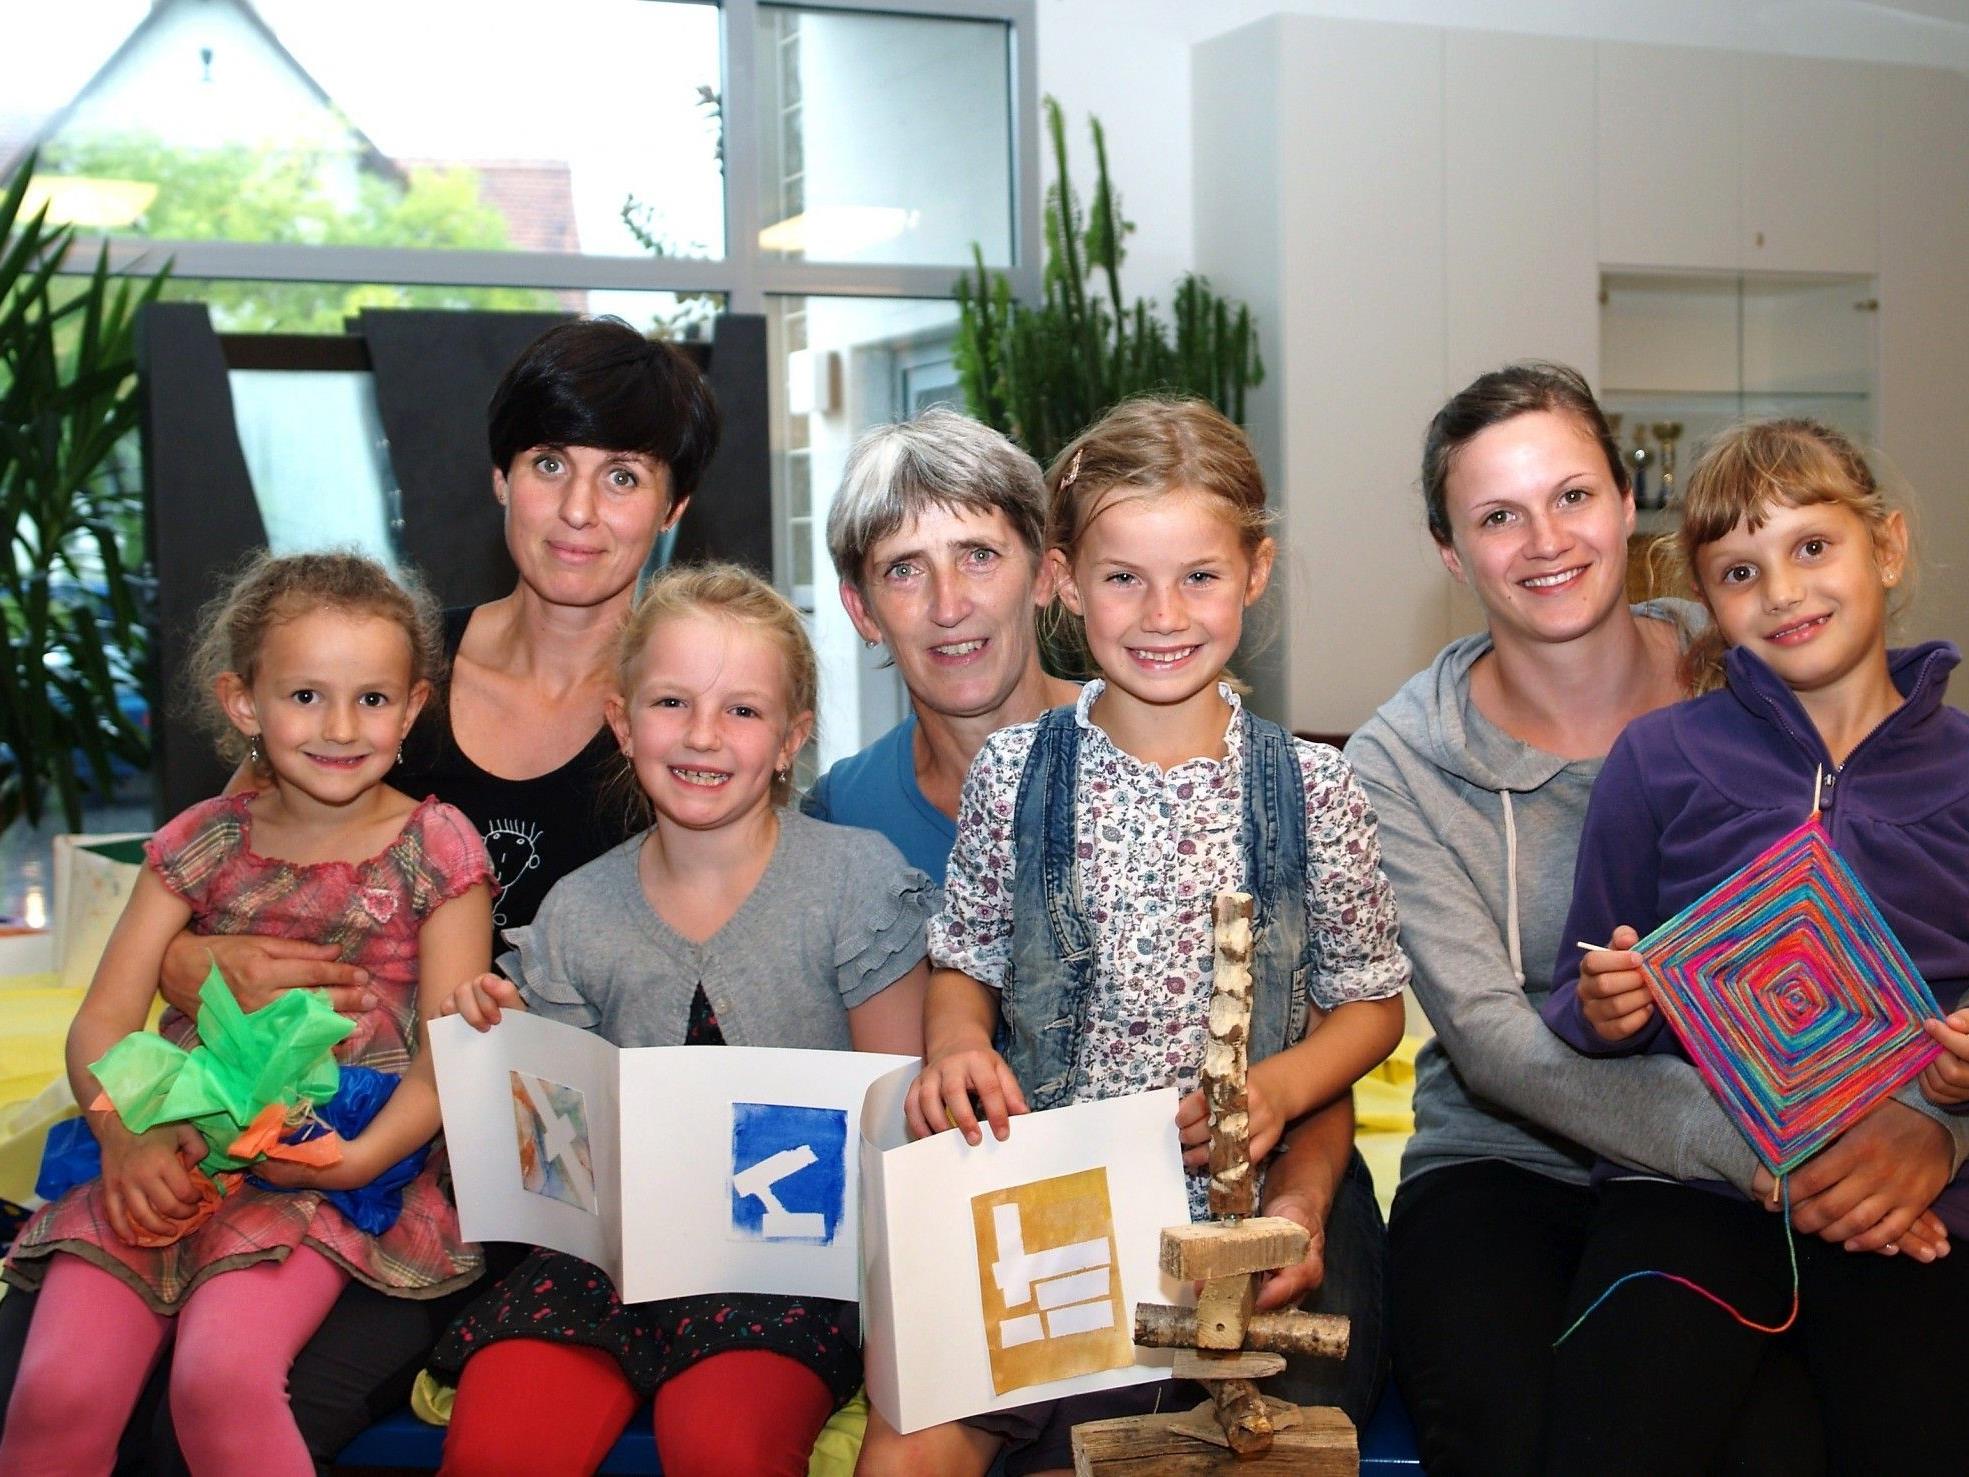 Irene Christof, Dorothea Ebner und Verena Dobler mit einigen Kindern bei der Abschlussveranstaltung.